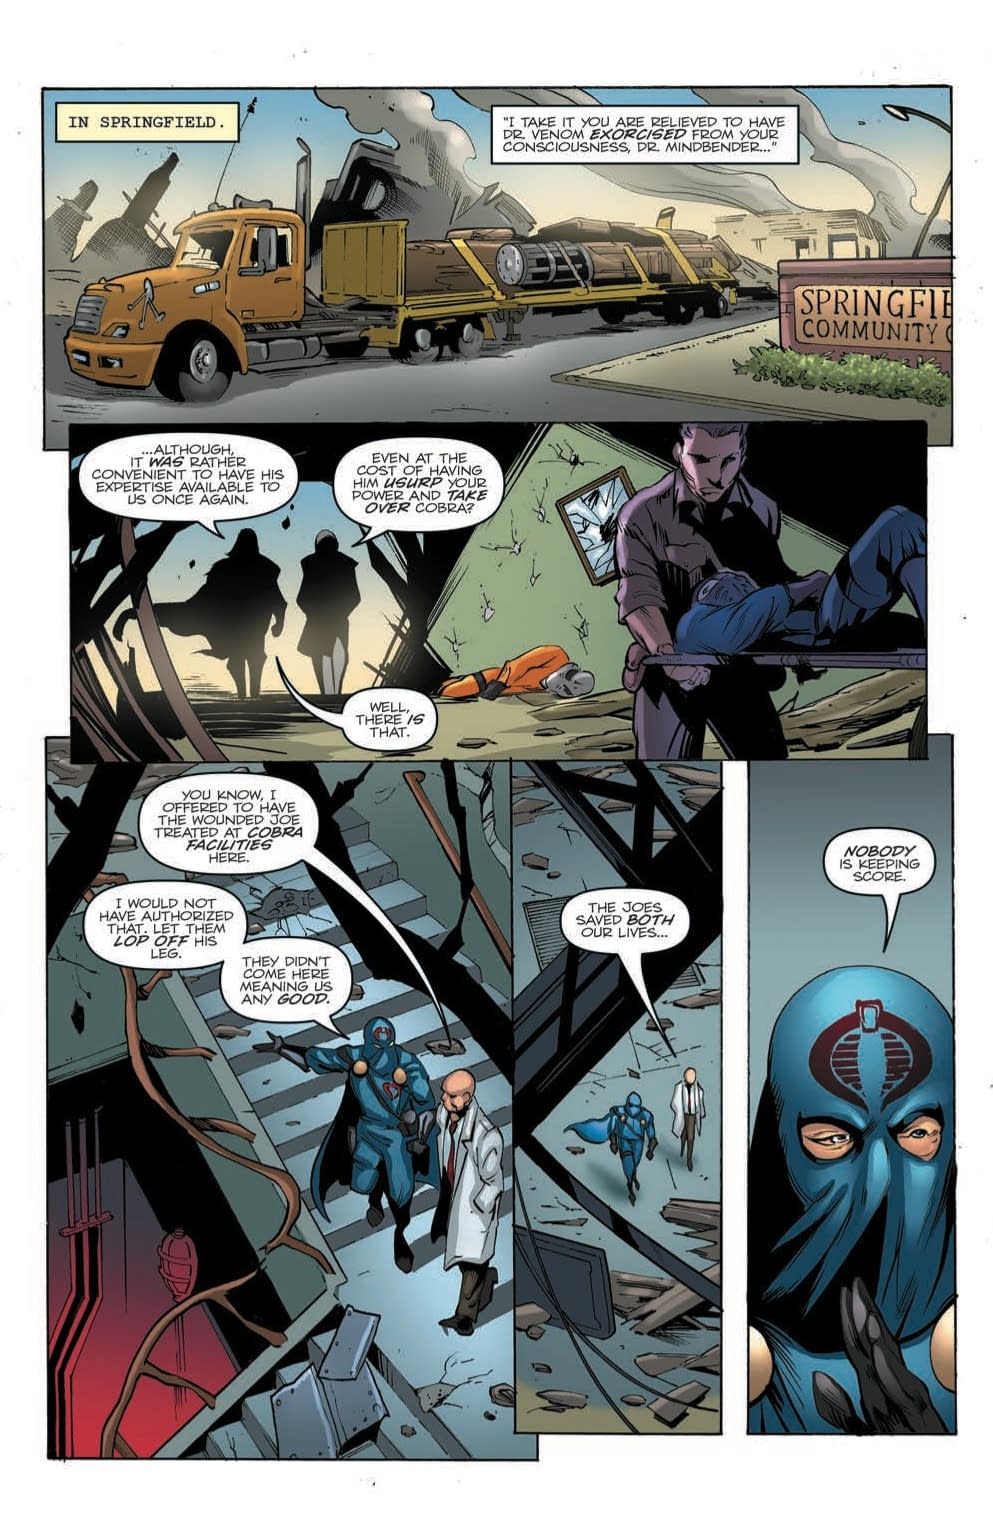 Is Doctor Mindbender a Traitor in Tomorrow's GI Joe: A Real American Hero #259?